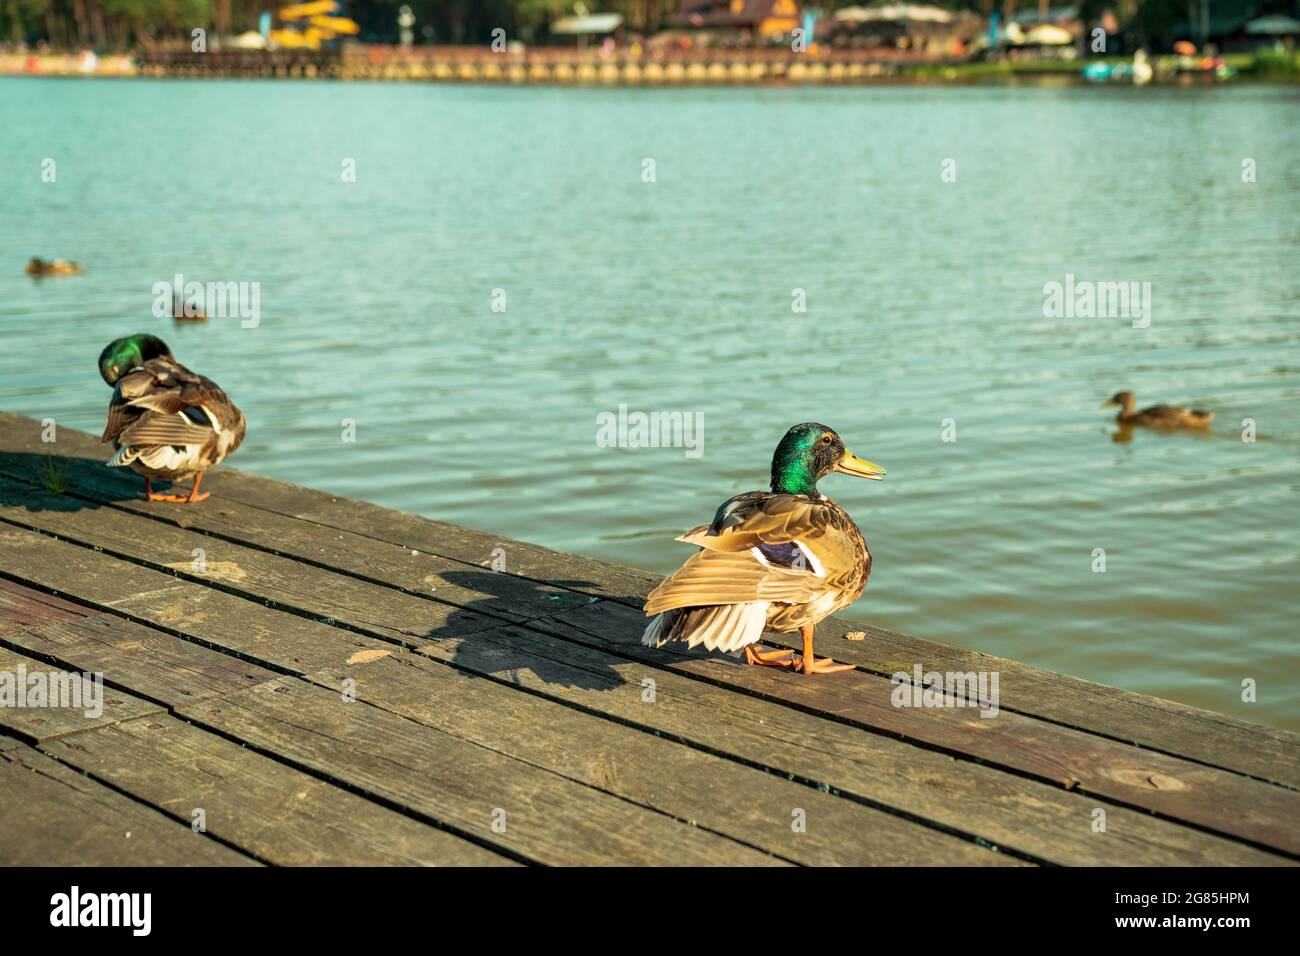 Ein paar Enten stehen auf einem hölzernen Pier. Blaues Wasser des Sees in Krasnobrod, Küste und weitere Enten im Hintergrund. Warmer, sonniger Tag. Krasnobró Stockfoto